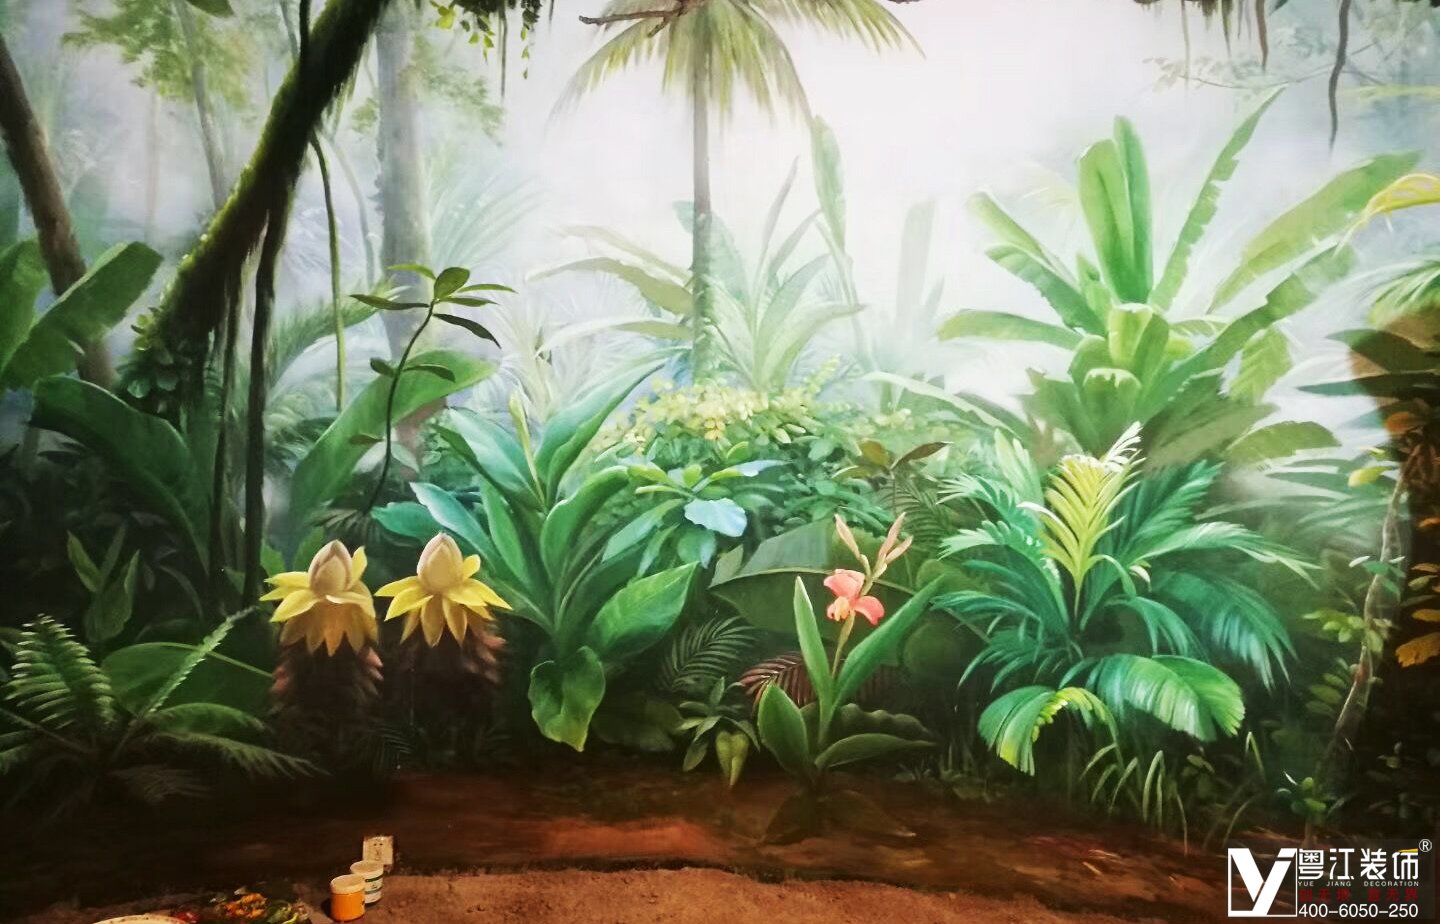 丛林大冒险全景3D立体画彩绘现场